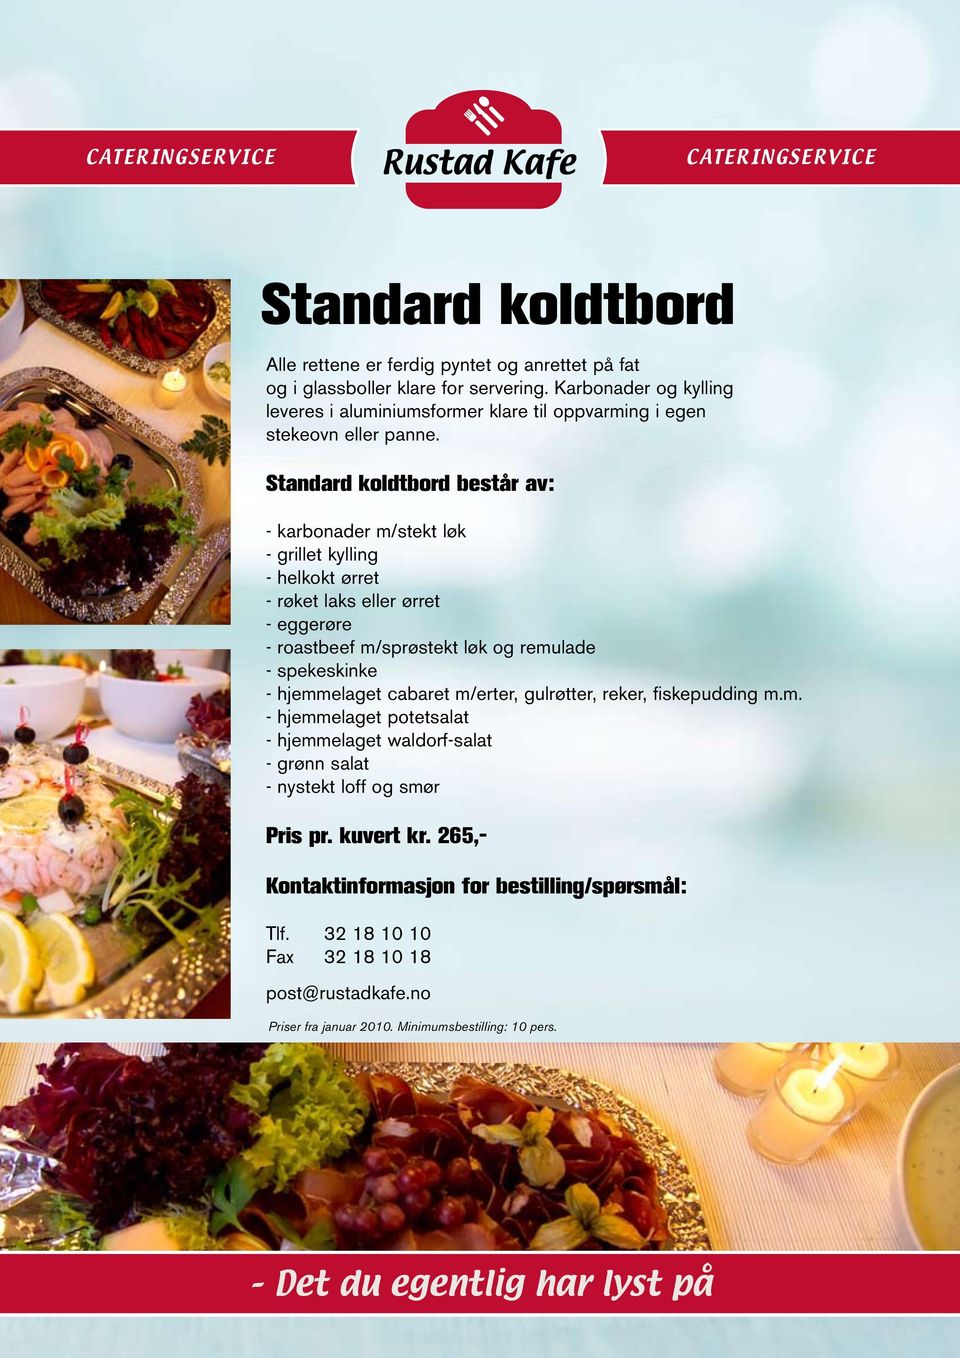 Standard koldtbord består av: - karbonader m/stekt løk - grillet kylling - helkokt ørret - røket laks eller ørret - eggerøre - roastbeef